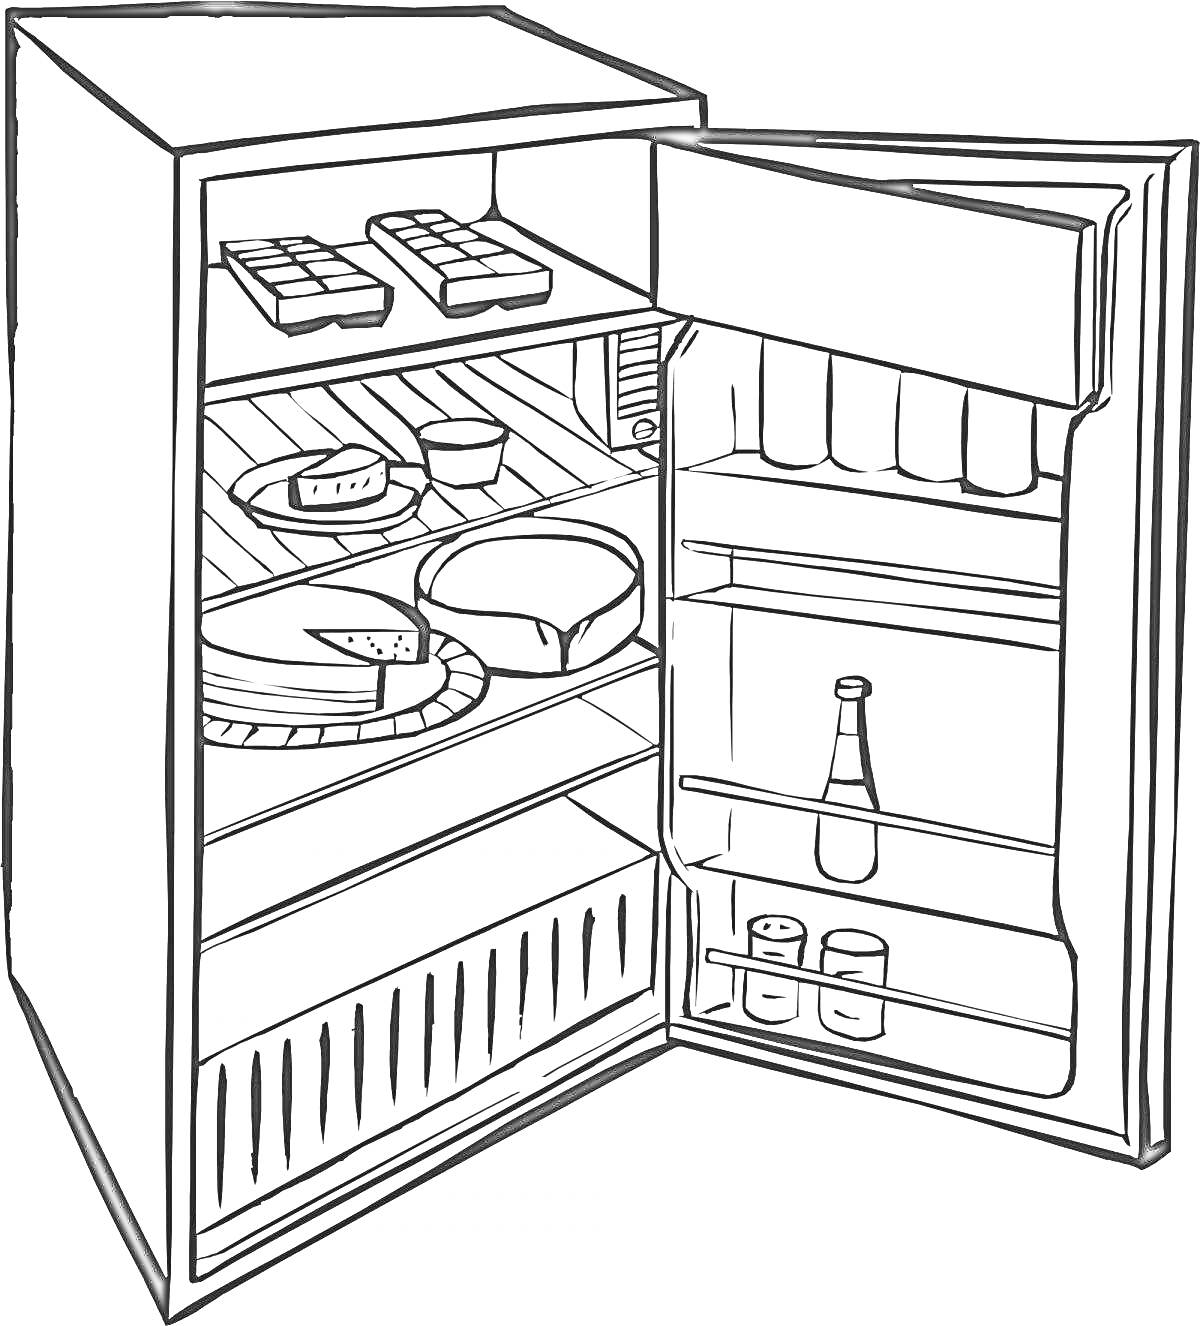 Раскраска Открытый холодильник с едой и напитками (полки с продуктами, дверца с бутылкой и банками)